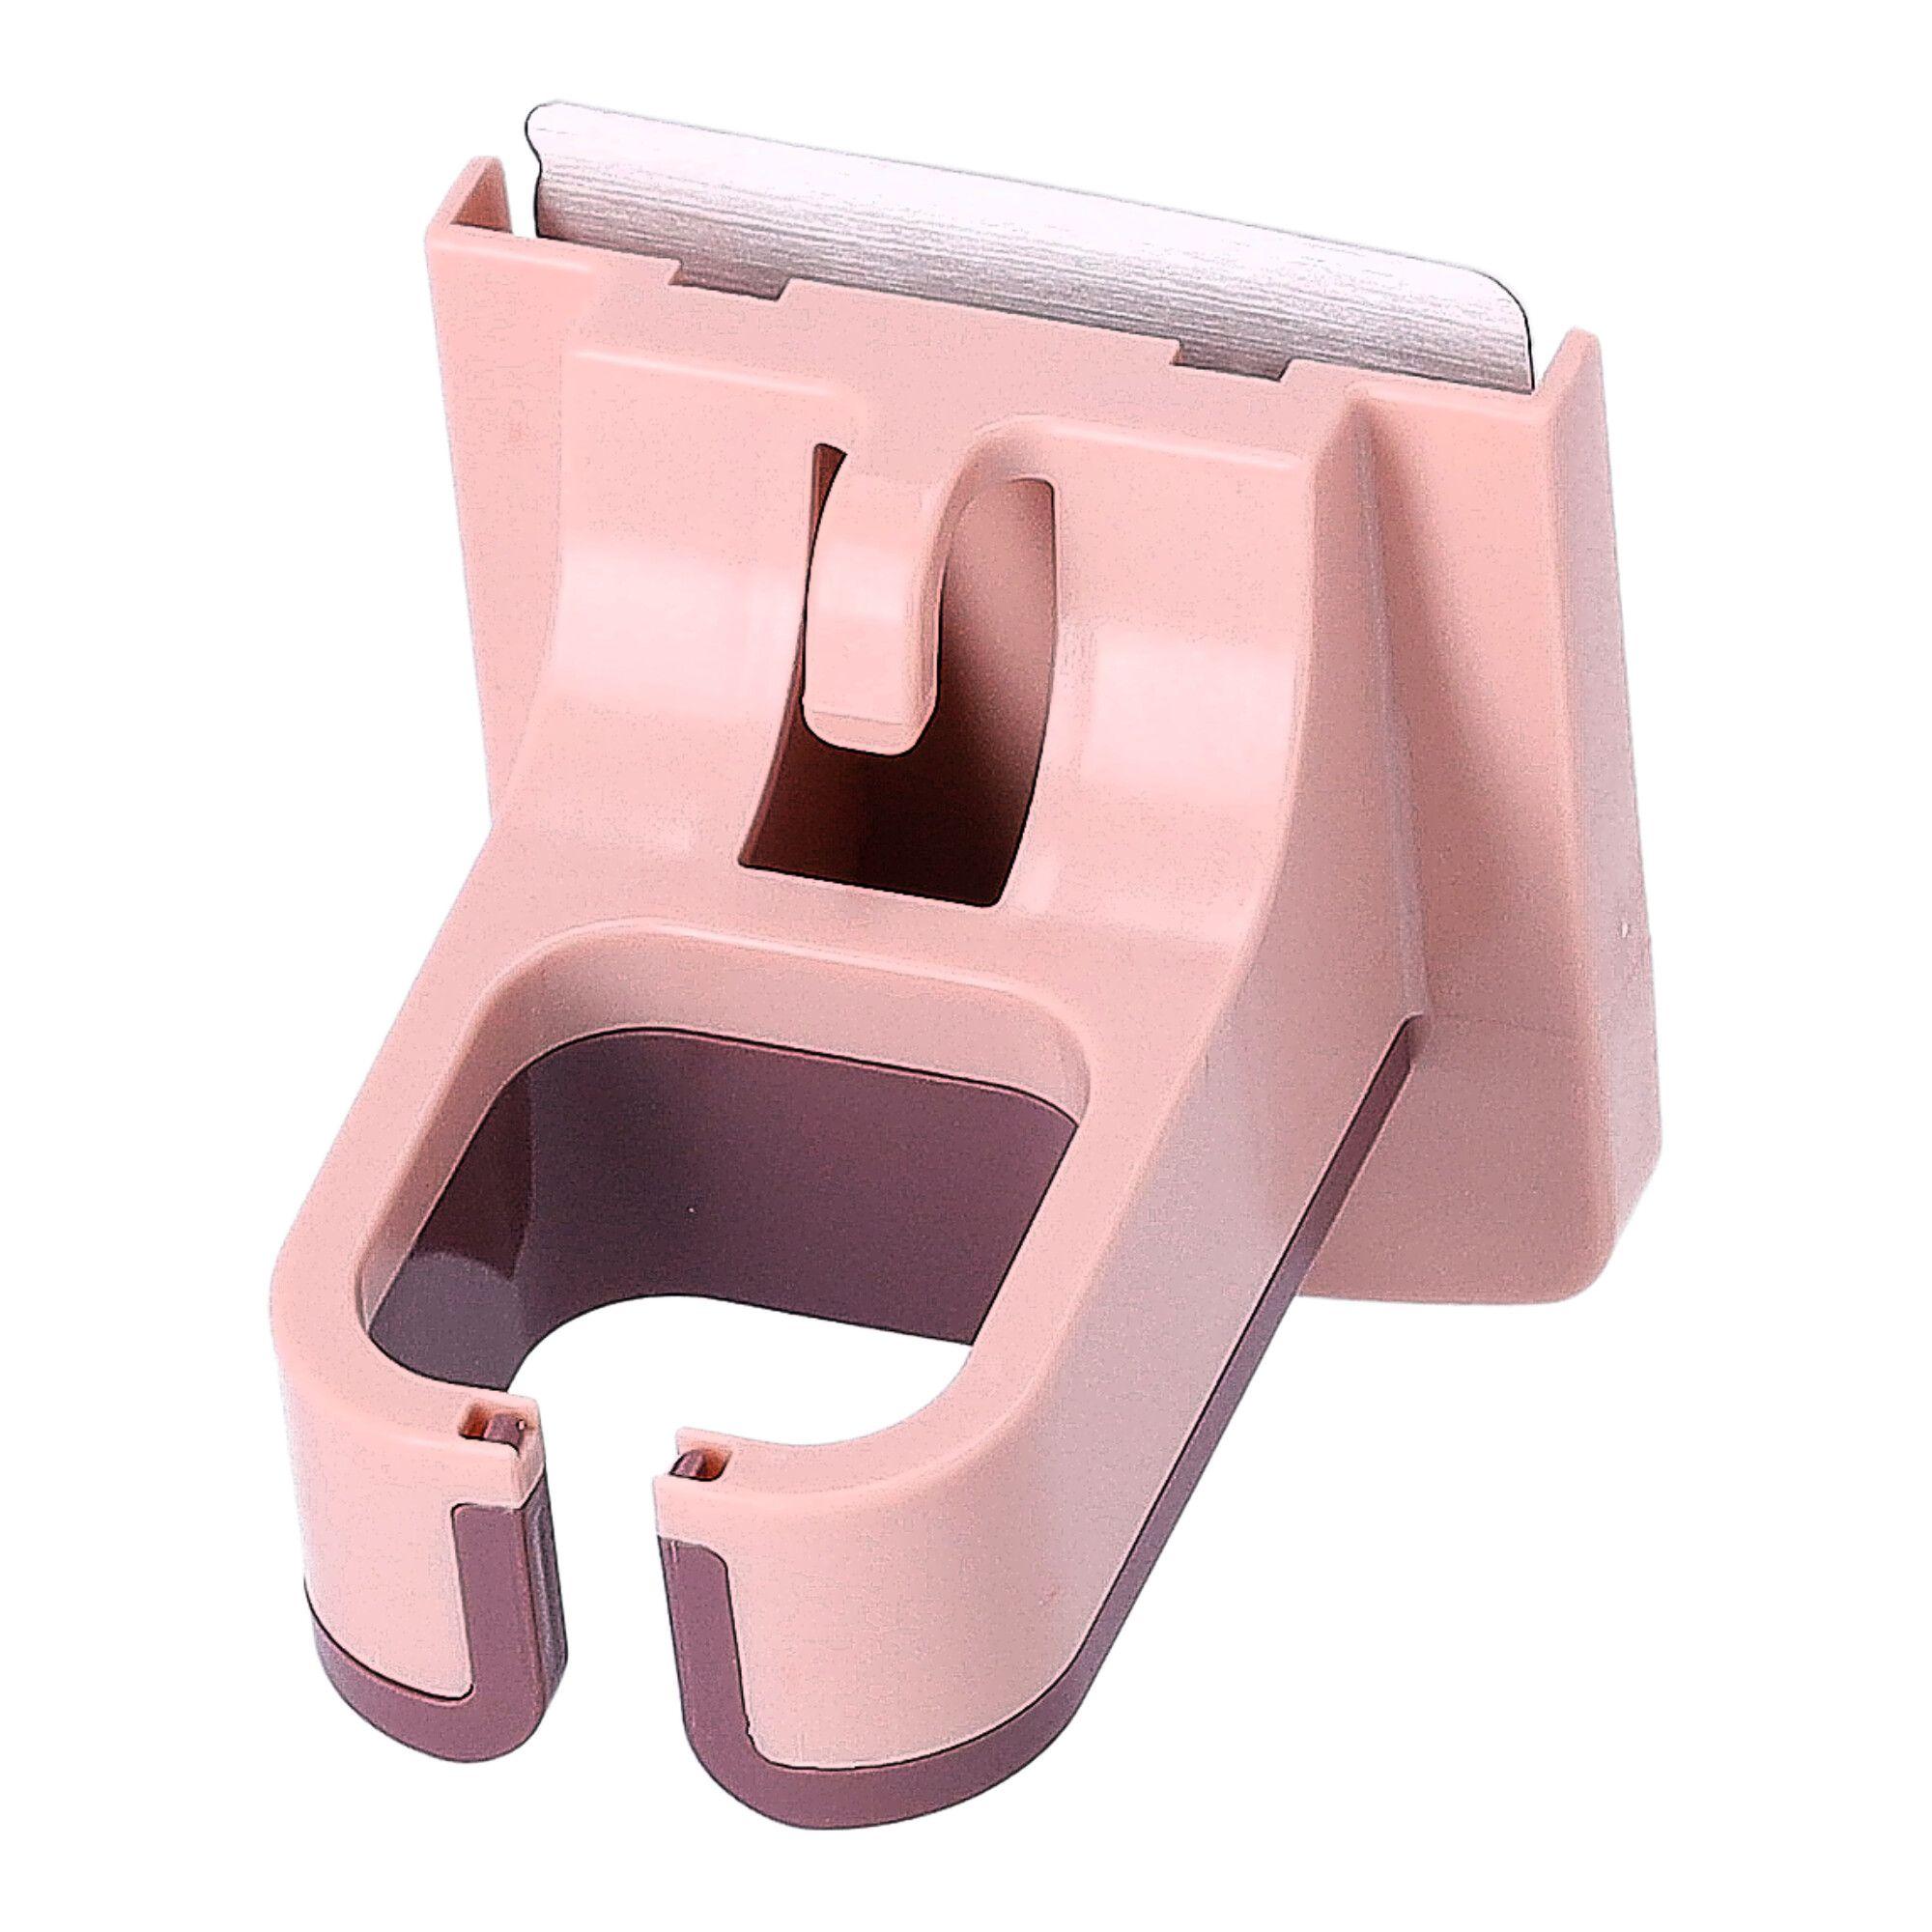 Multifunctional hanging holder - pink